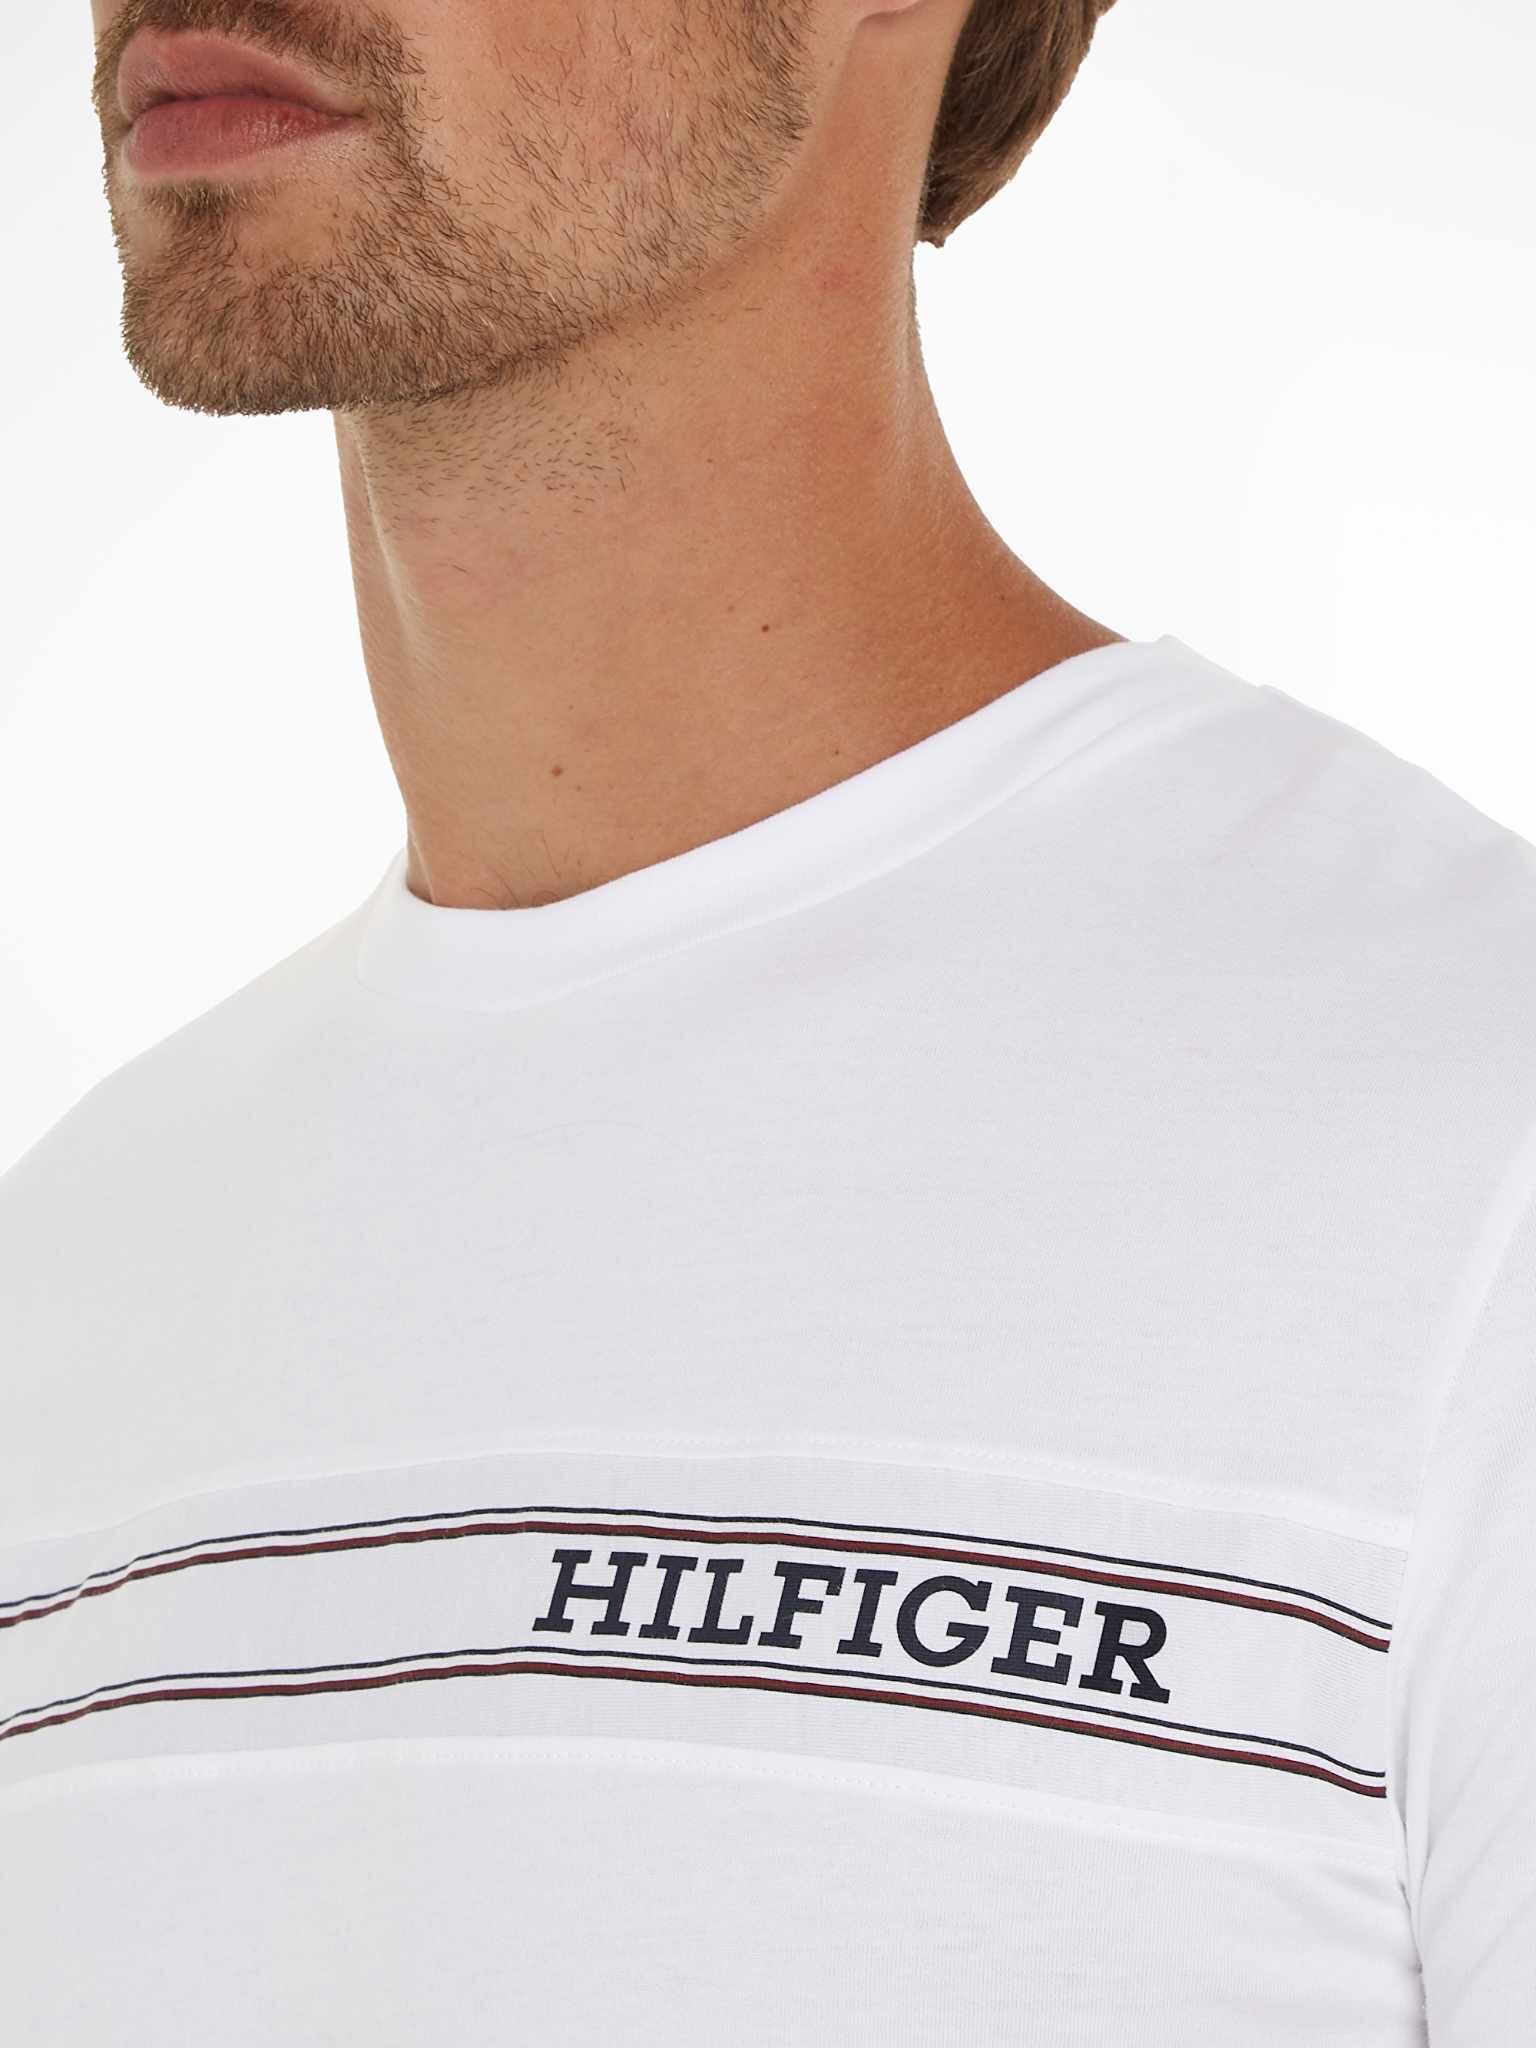 TOMMY HILFIGER tričko biele  UMOUM03196  YBR